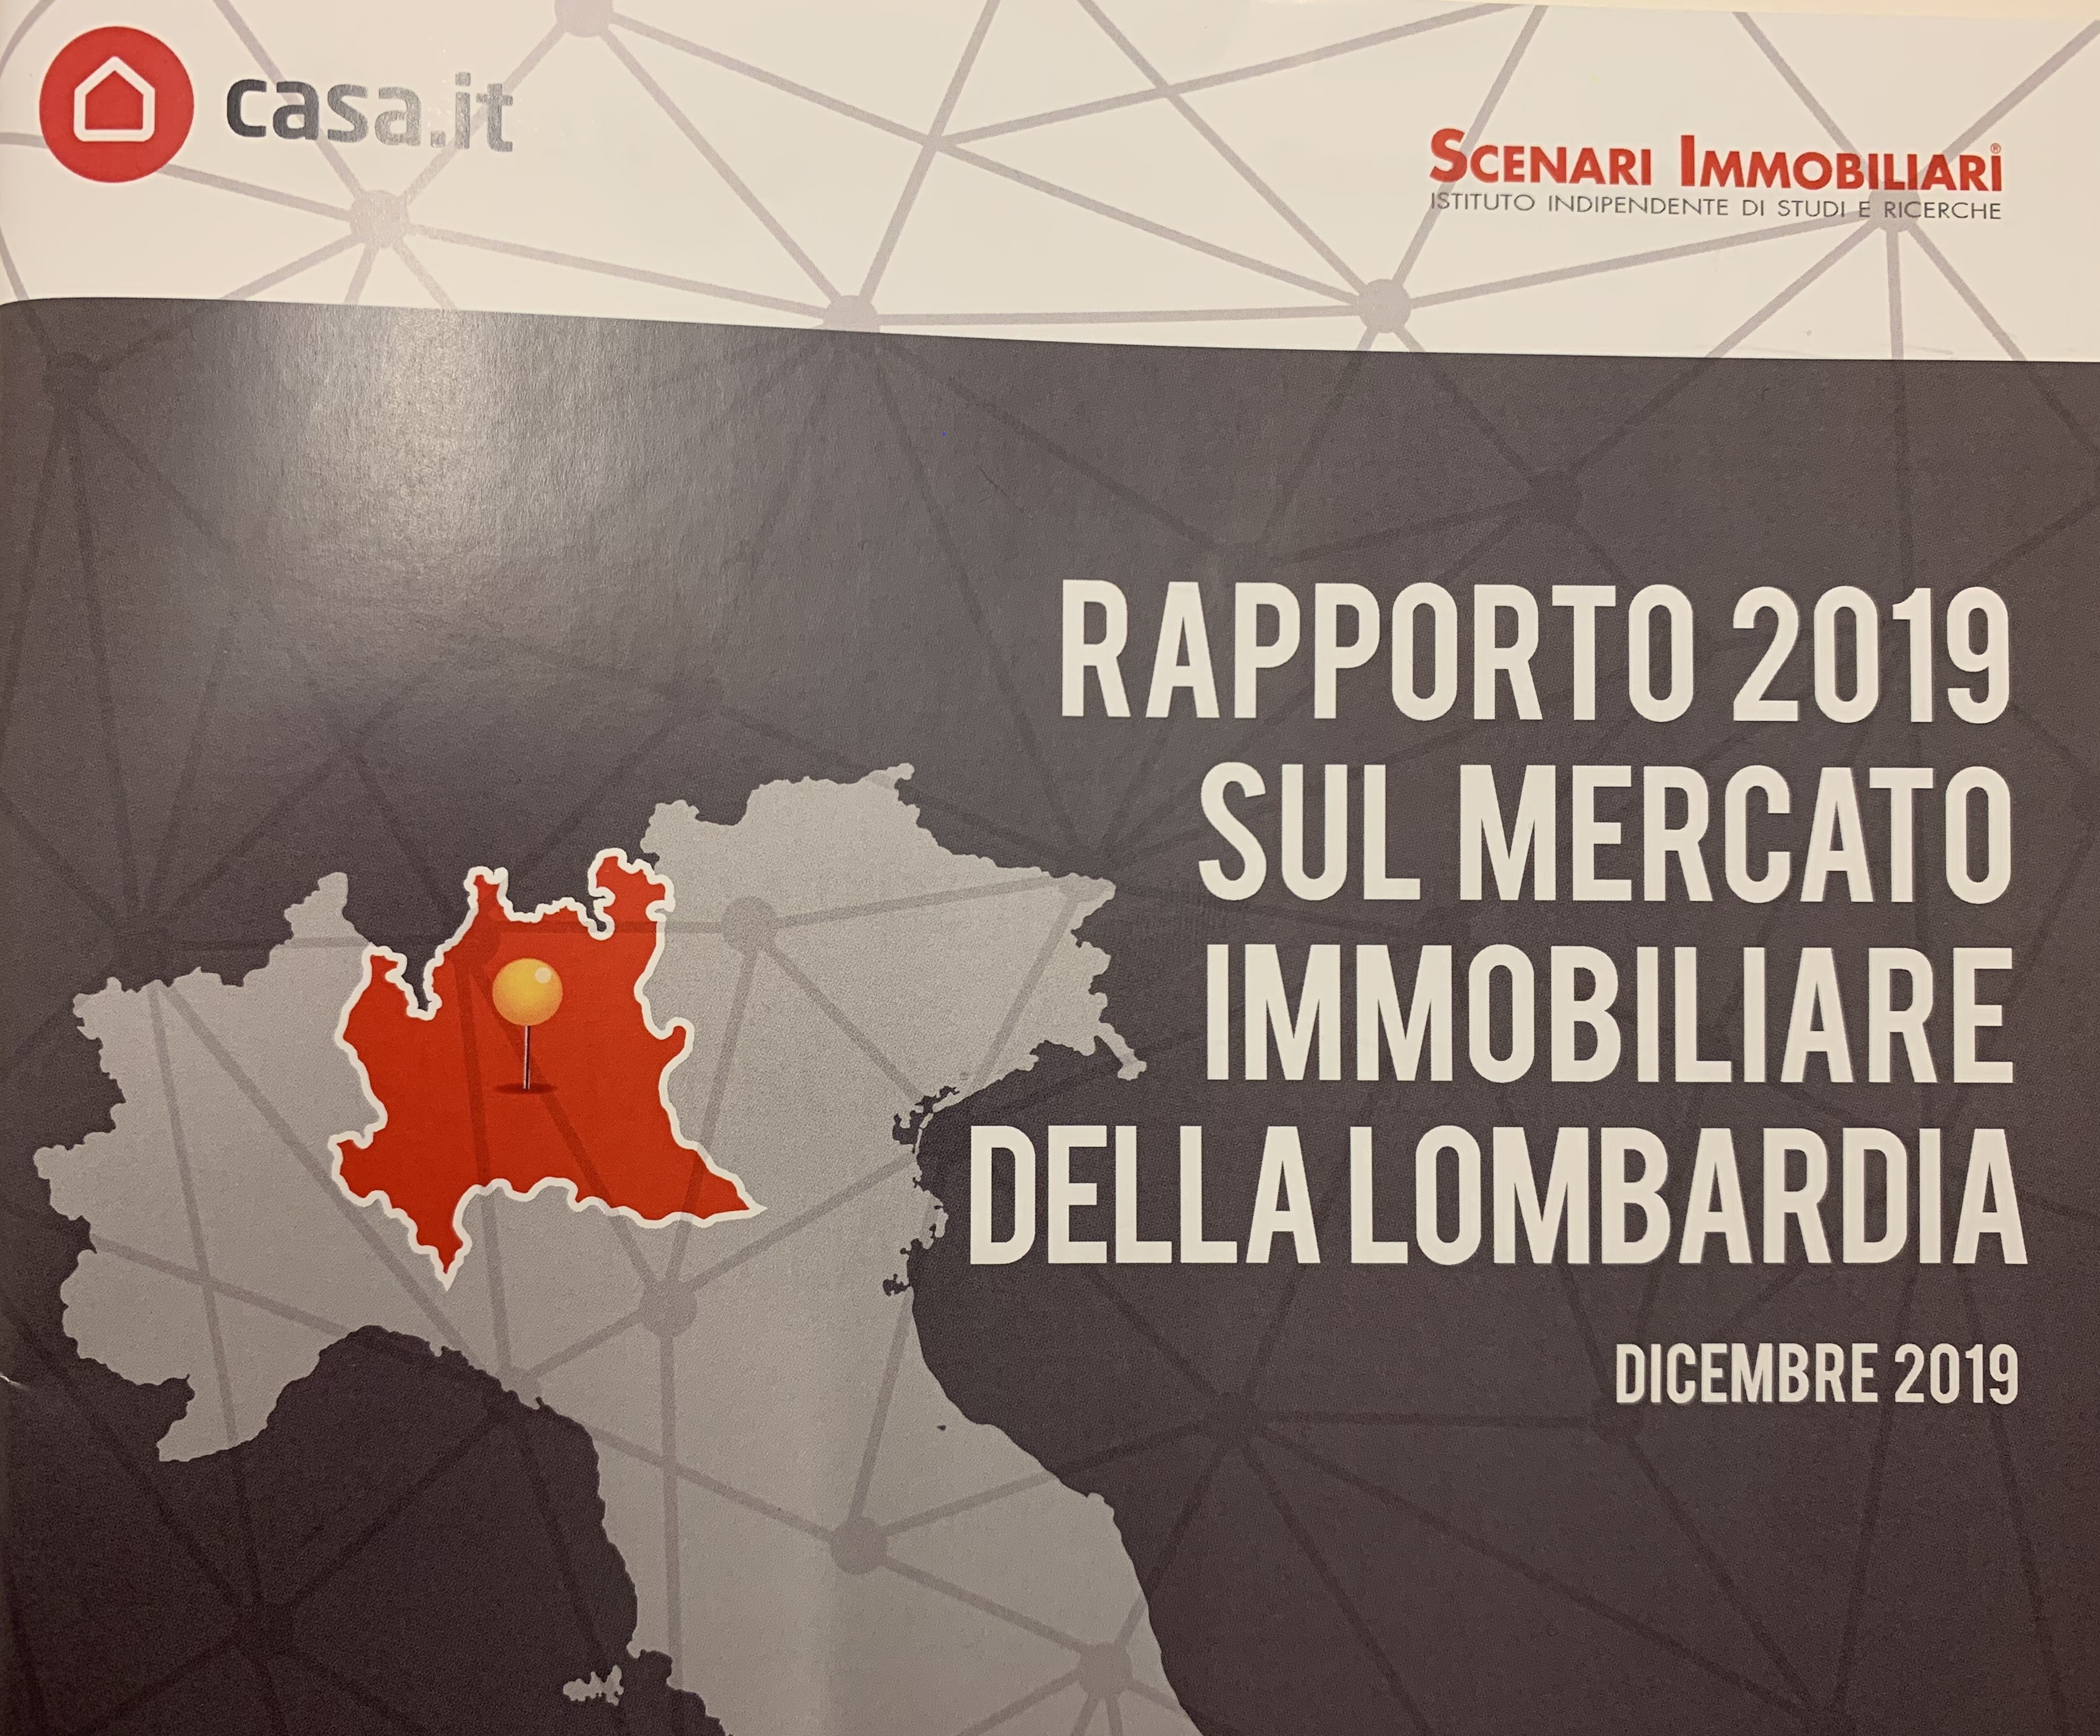 Il mercato immobiliare in Lombardia: report 2019